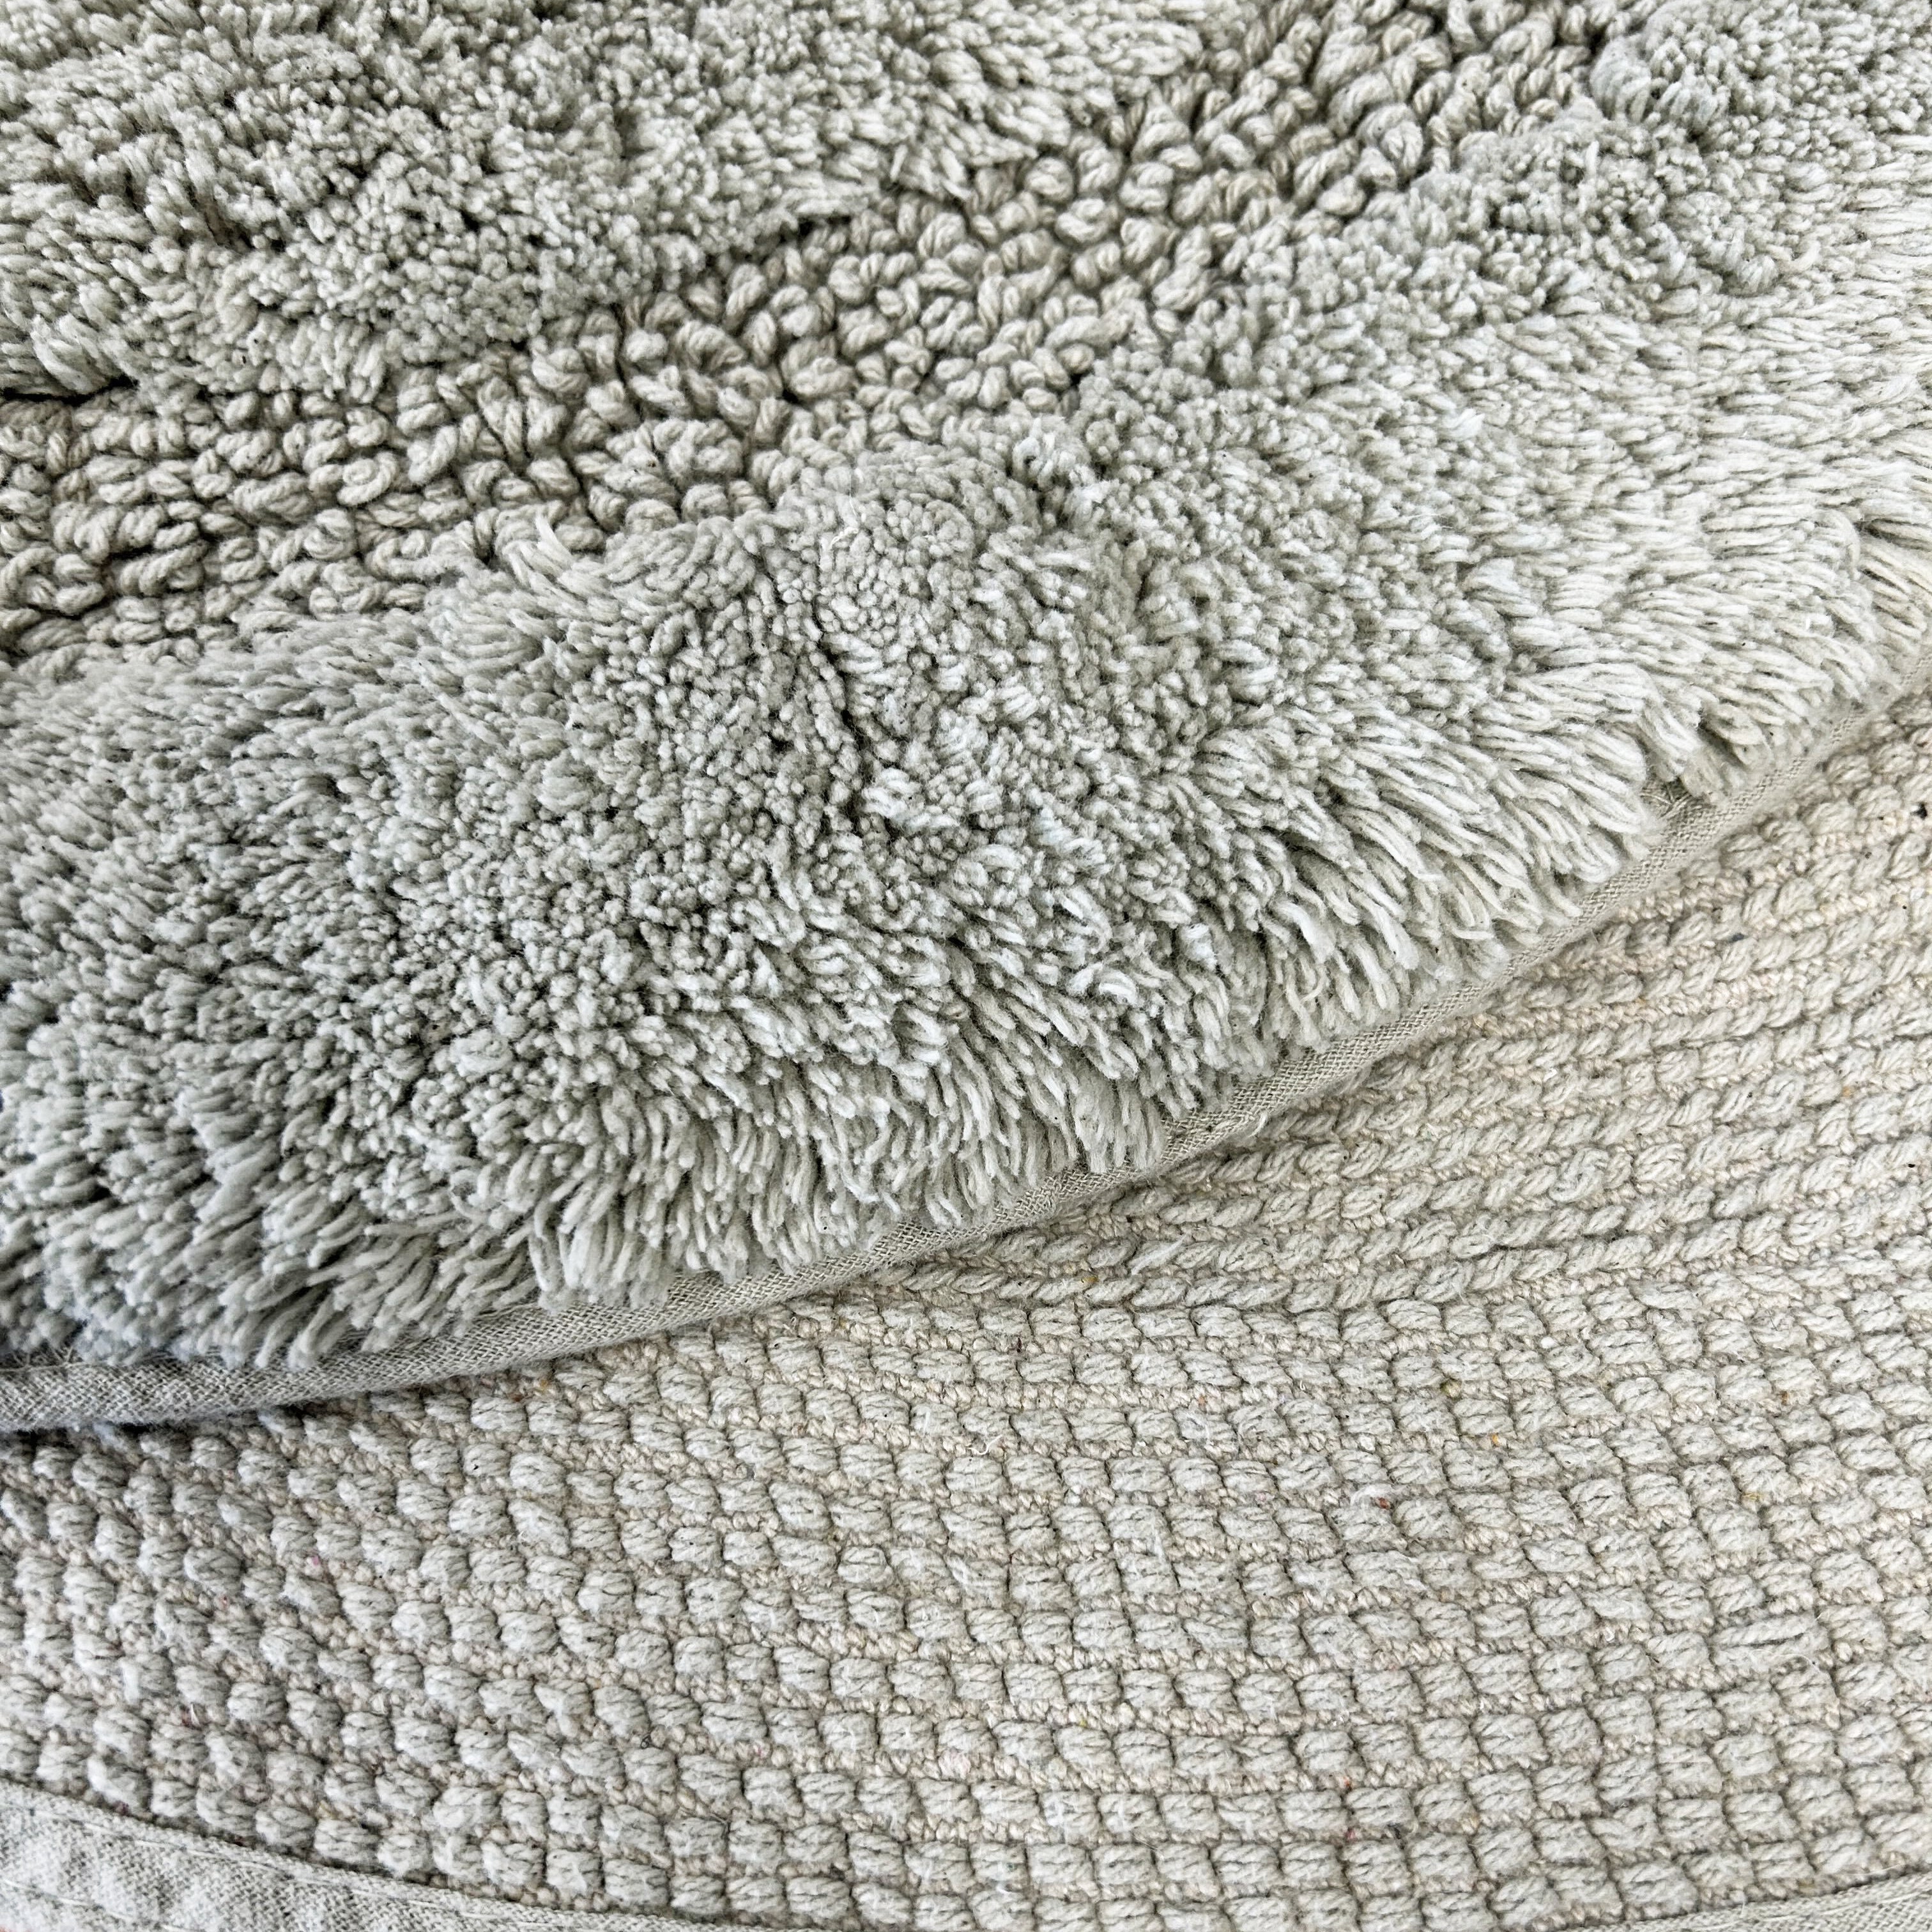 Close up of grey bath mat